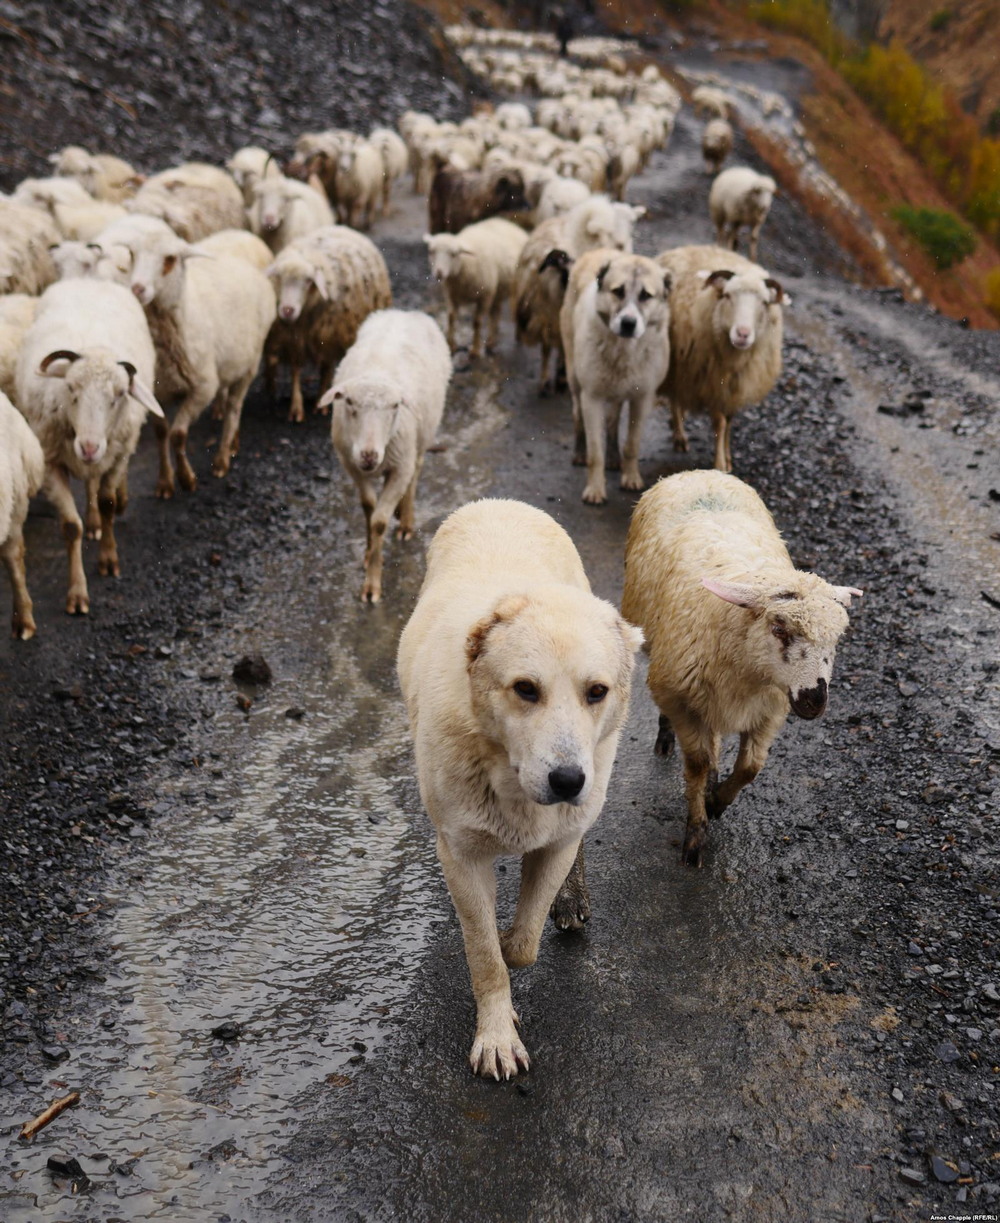 Зимняя миграция овец в горах Грузии